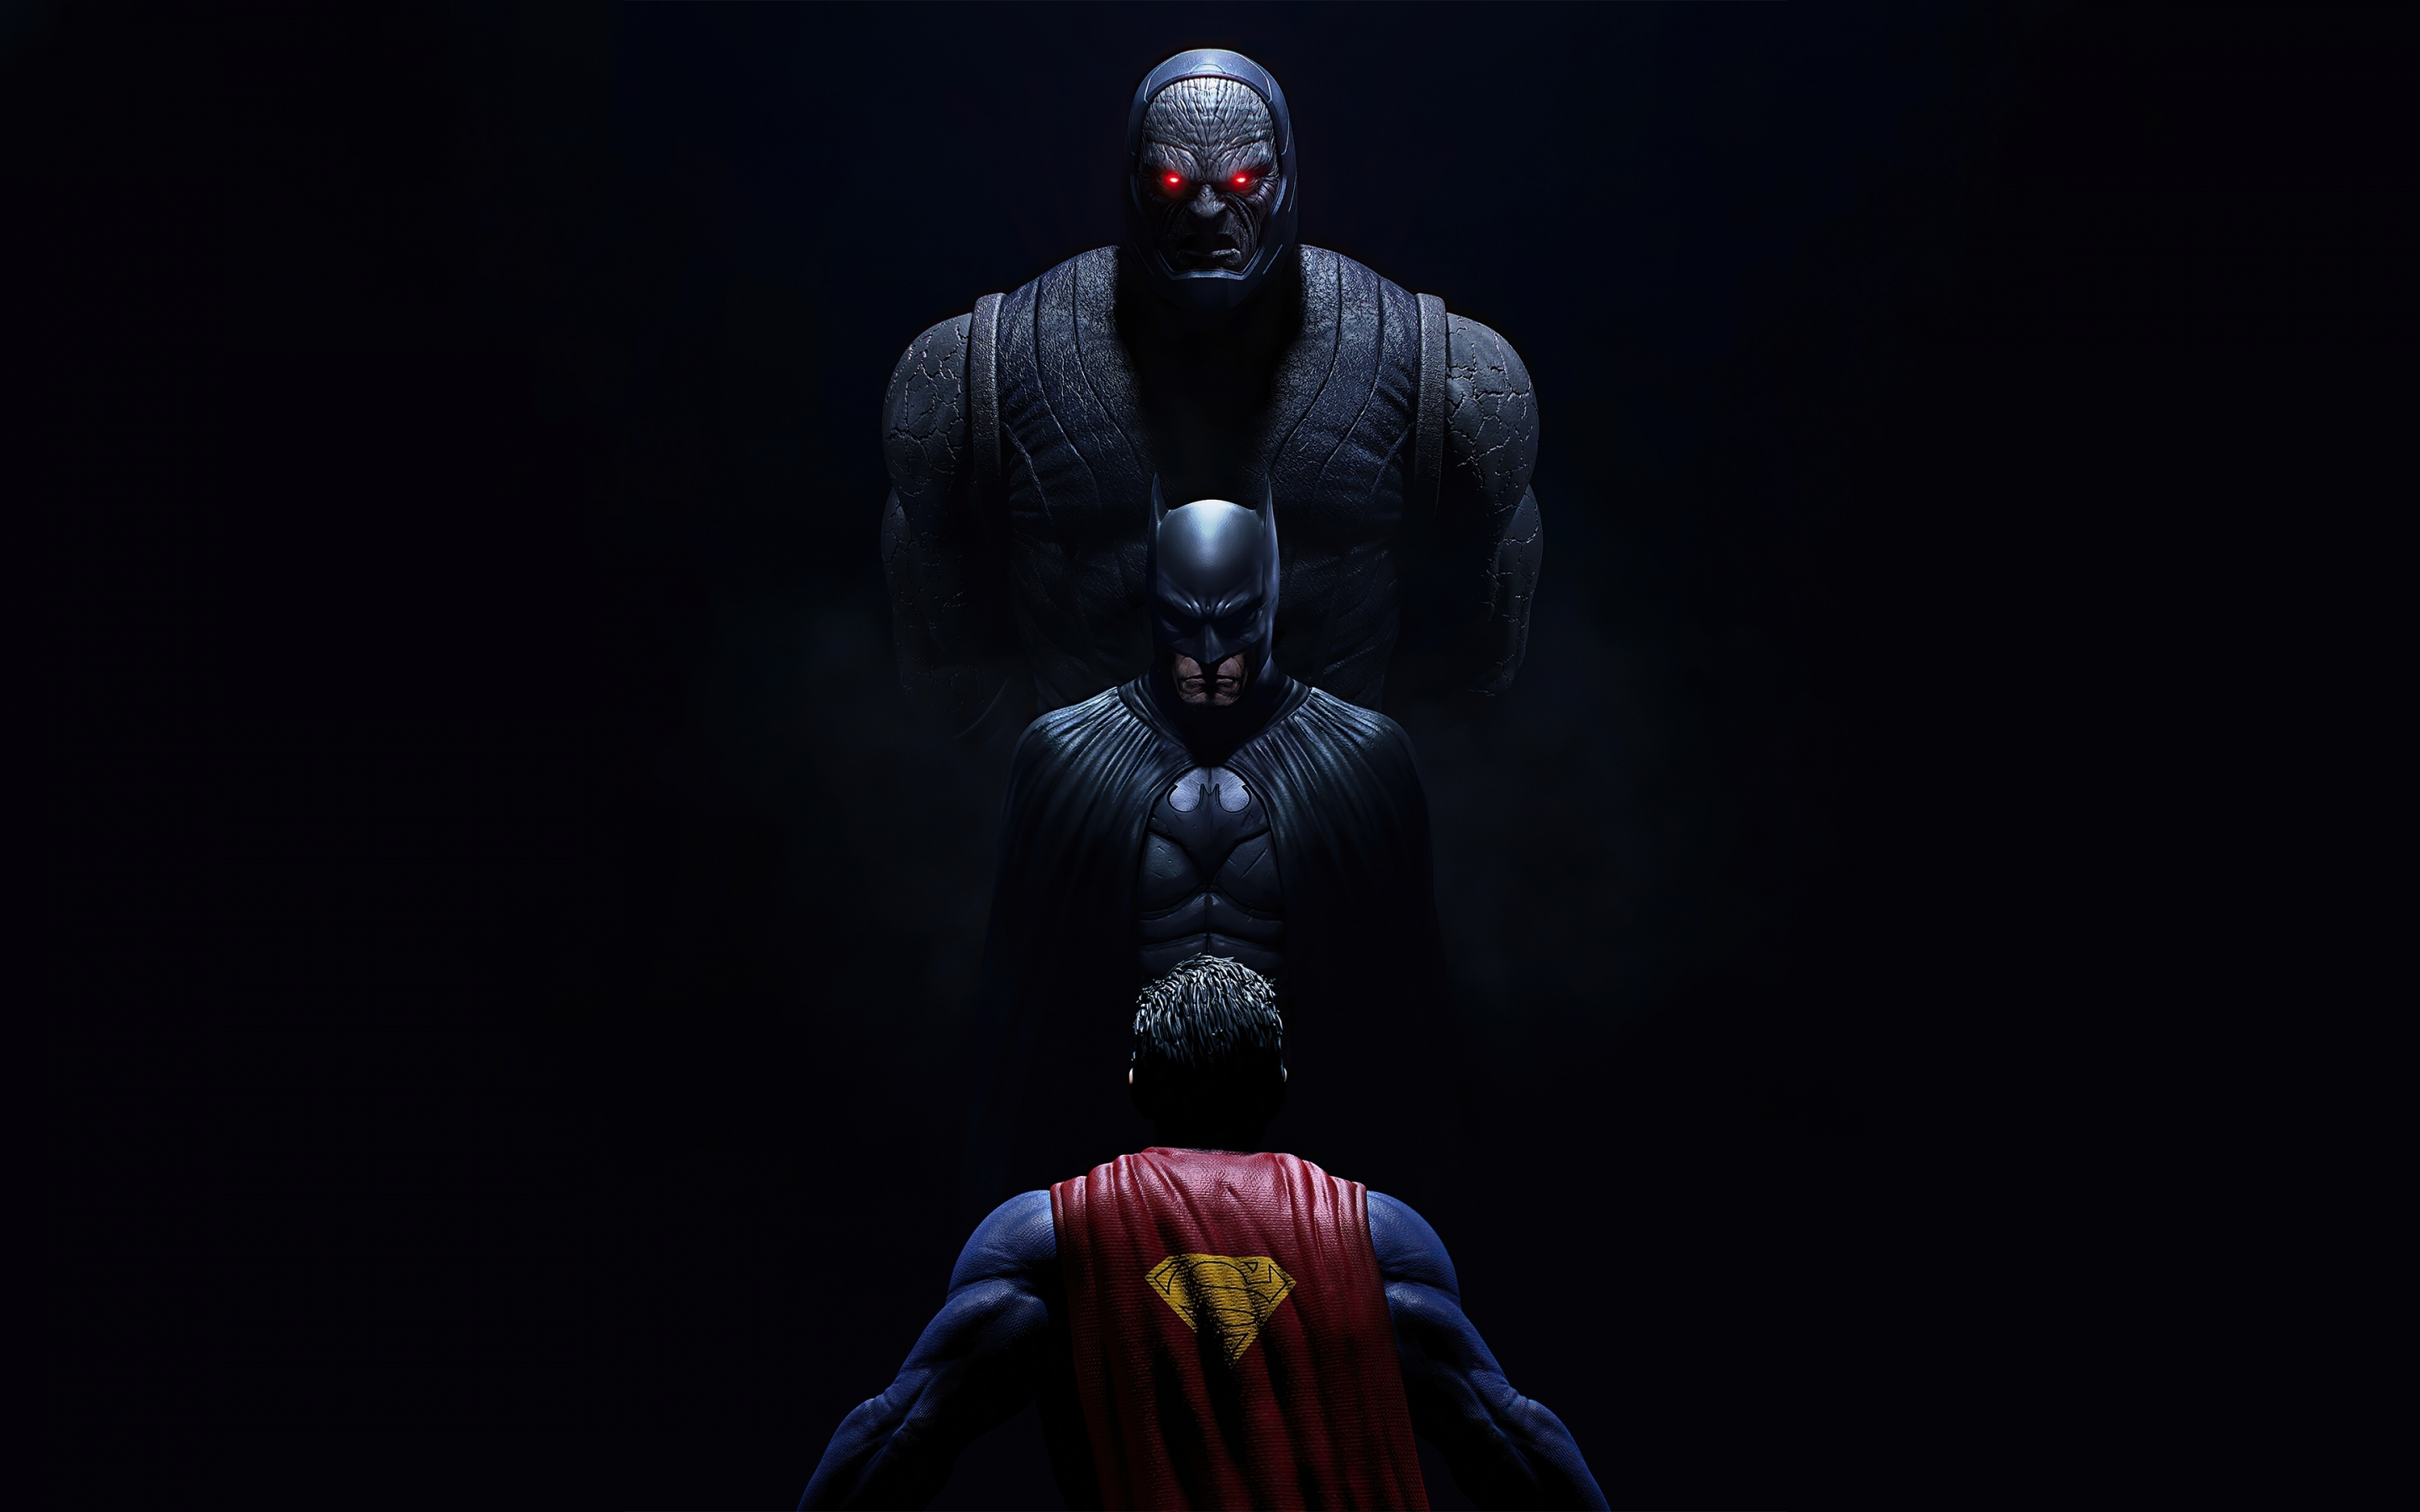 Darkseid & batman vs superman, dark, 2880x1800 wallpaper